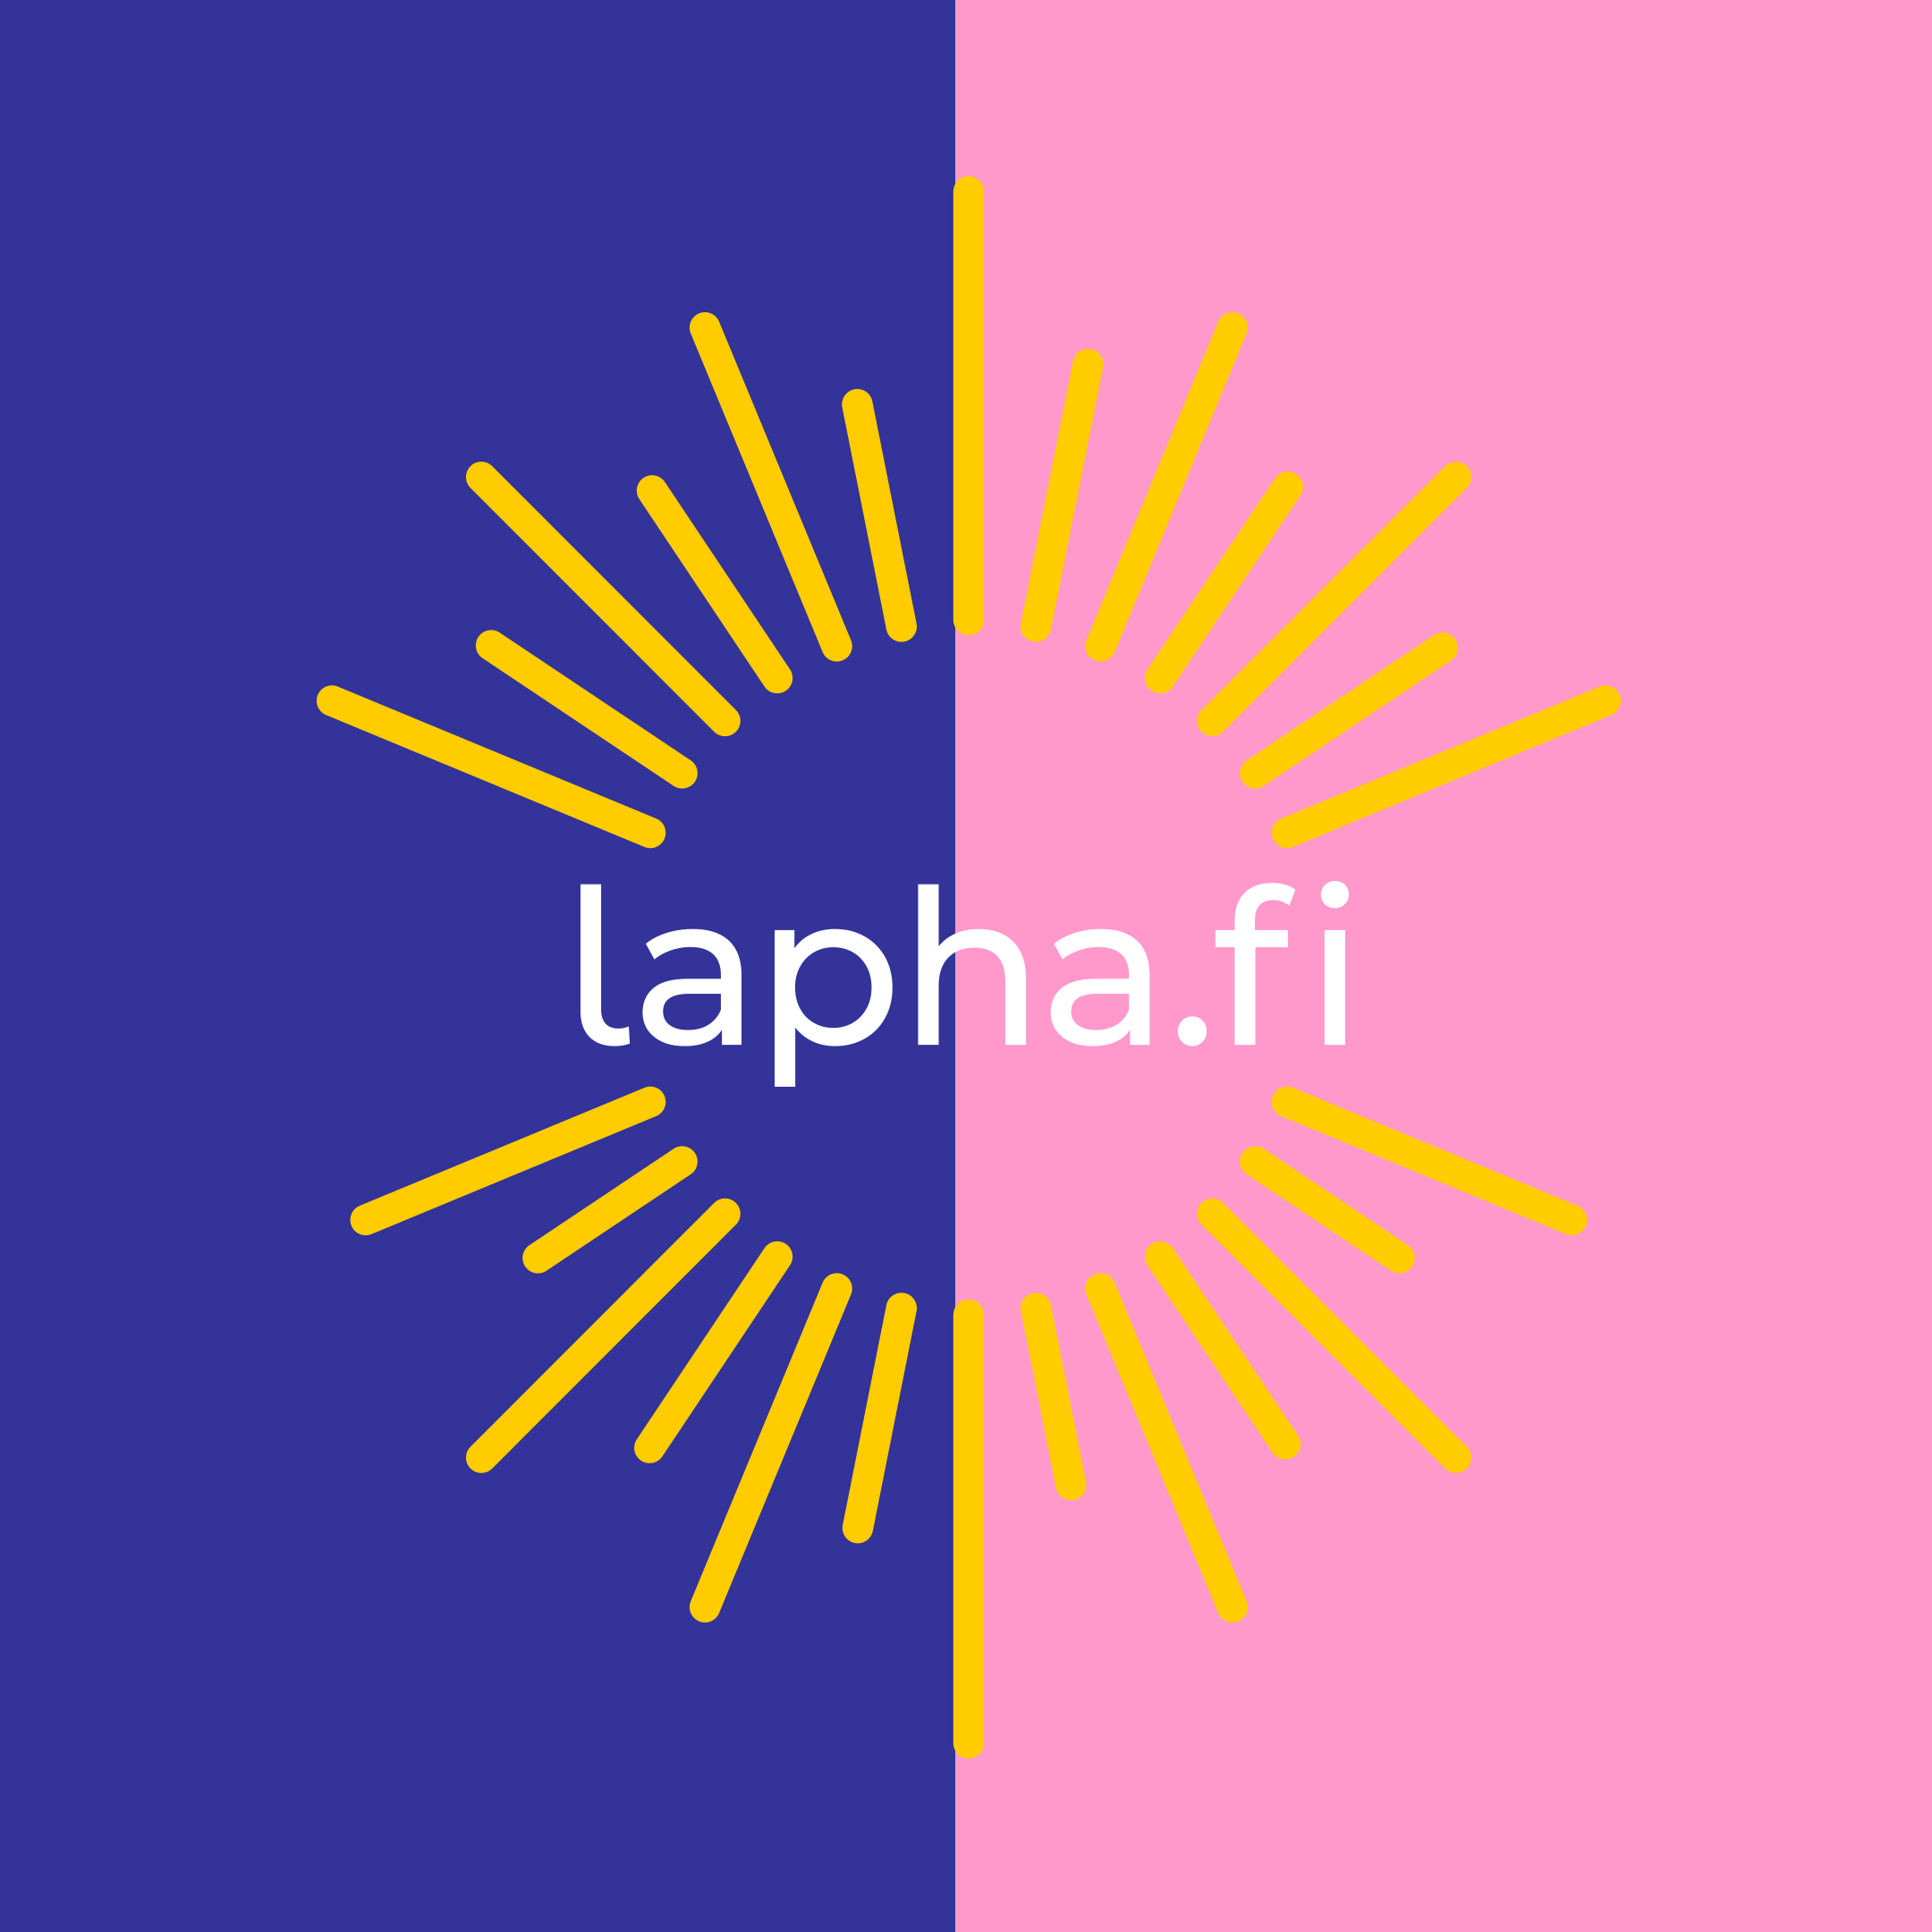 Lapin hyvinvointialueen logo. Puoleksi sinisen ja puoleksi vaaleanpunaisen taustan päällä keltainen loiste-elementti, jonka keskellä lukee lapha.fi.